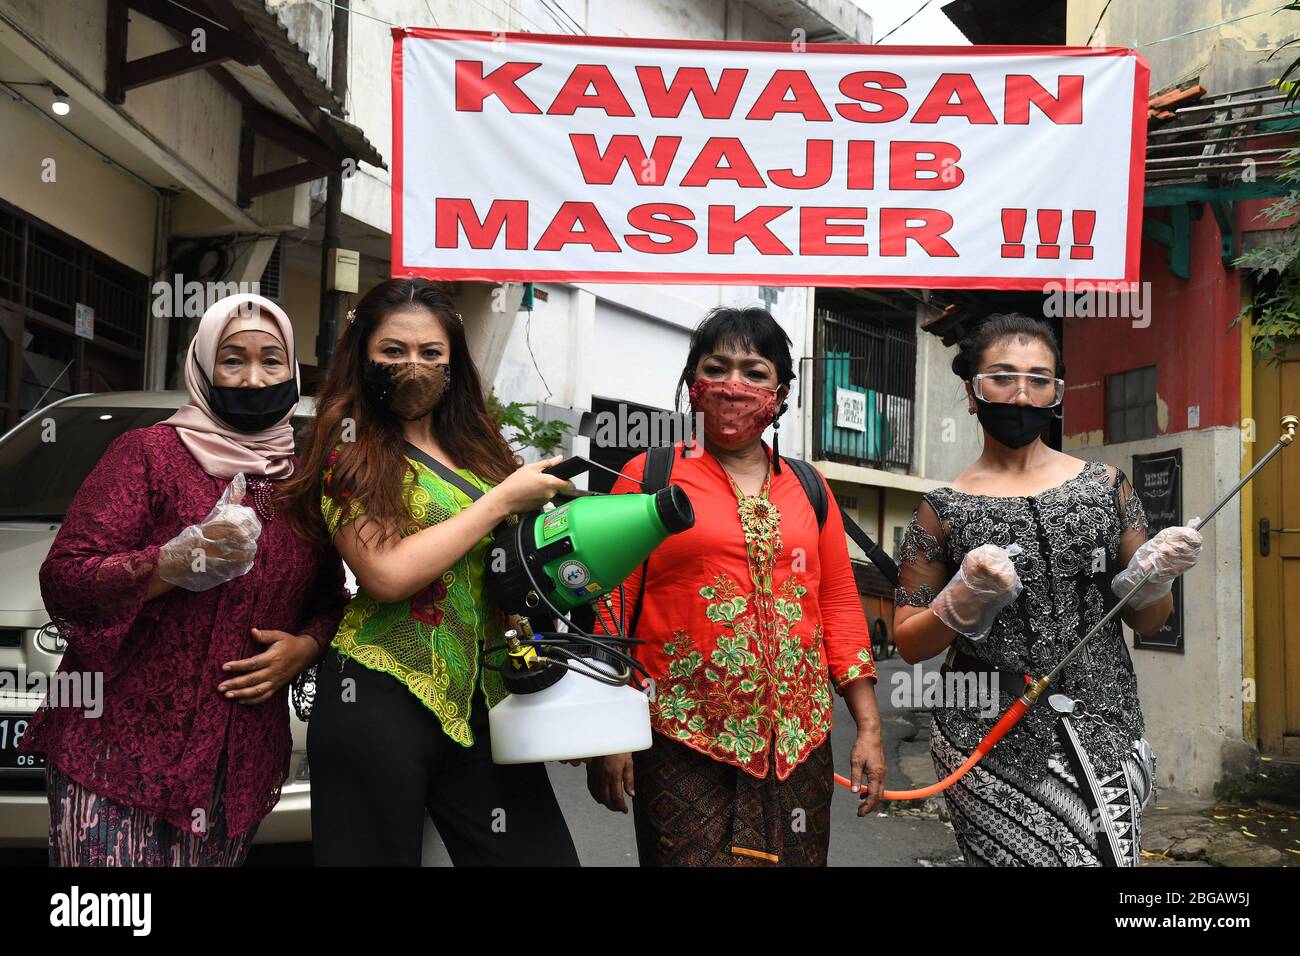 Kartini Banque de photographies et d'images à haute résolution - Alamy